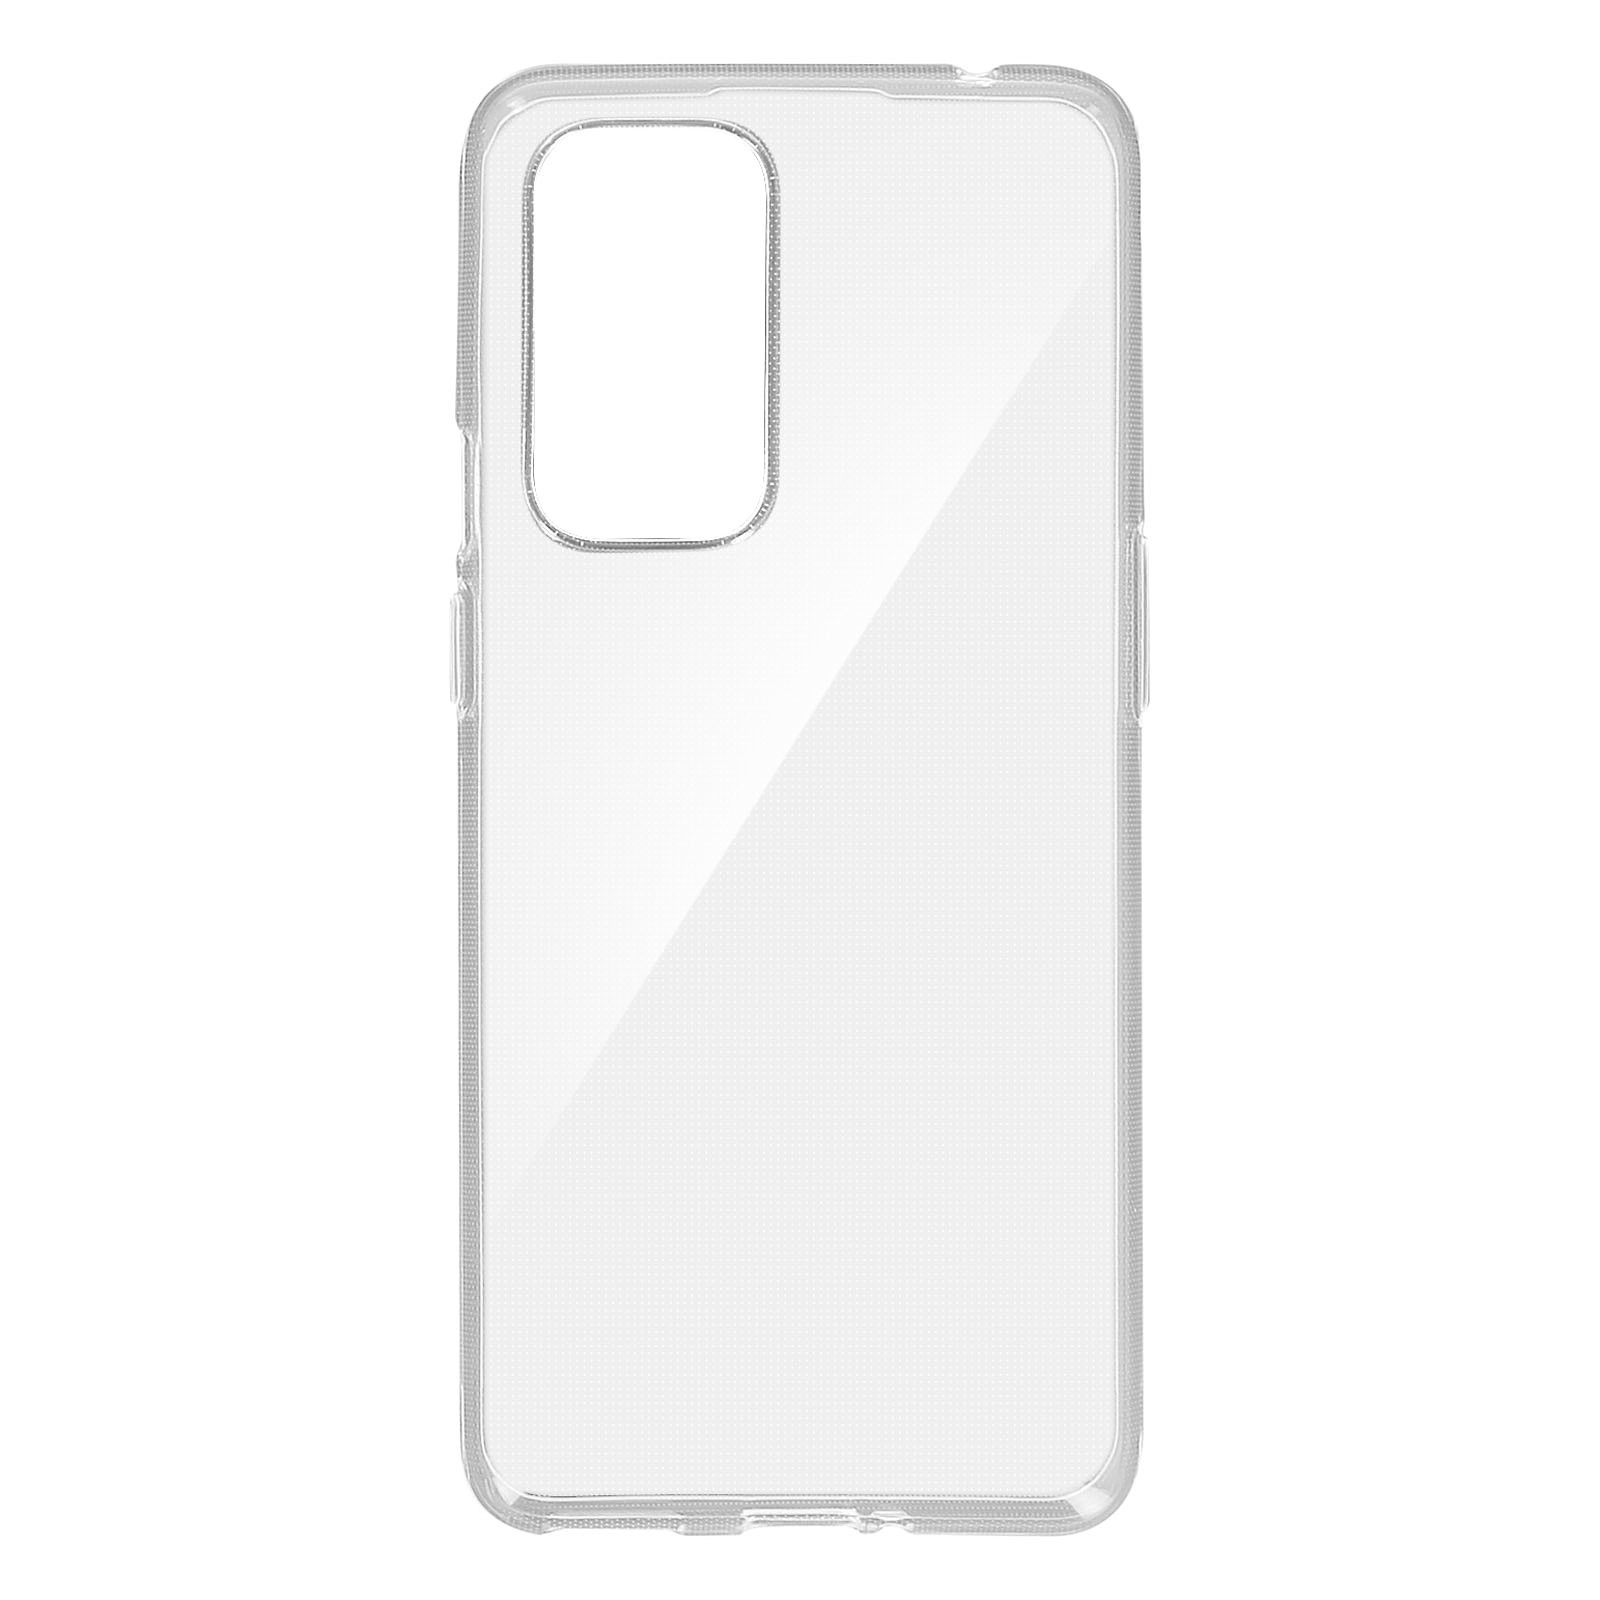 Avizar Coque pour OnePlus 9 Pro Protection Silicone Gel Souple Design Slim Transparent - Coque telephone Avizar